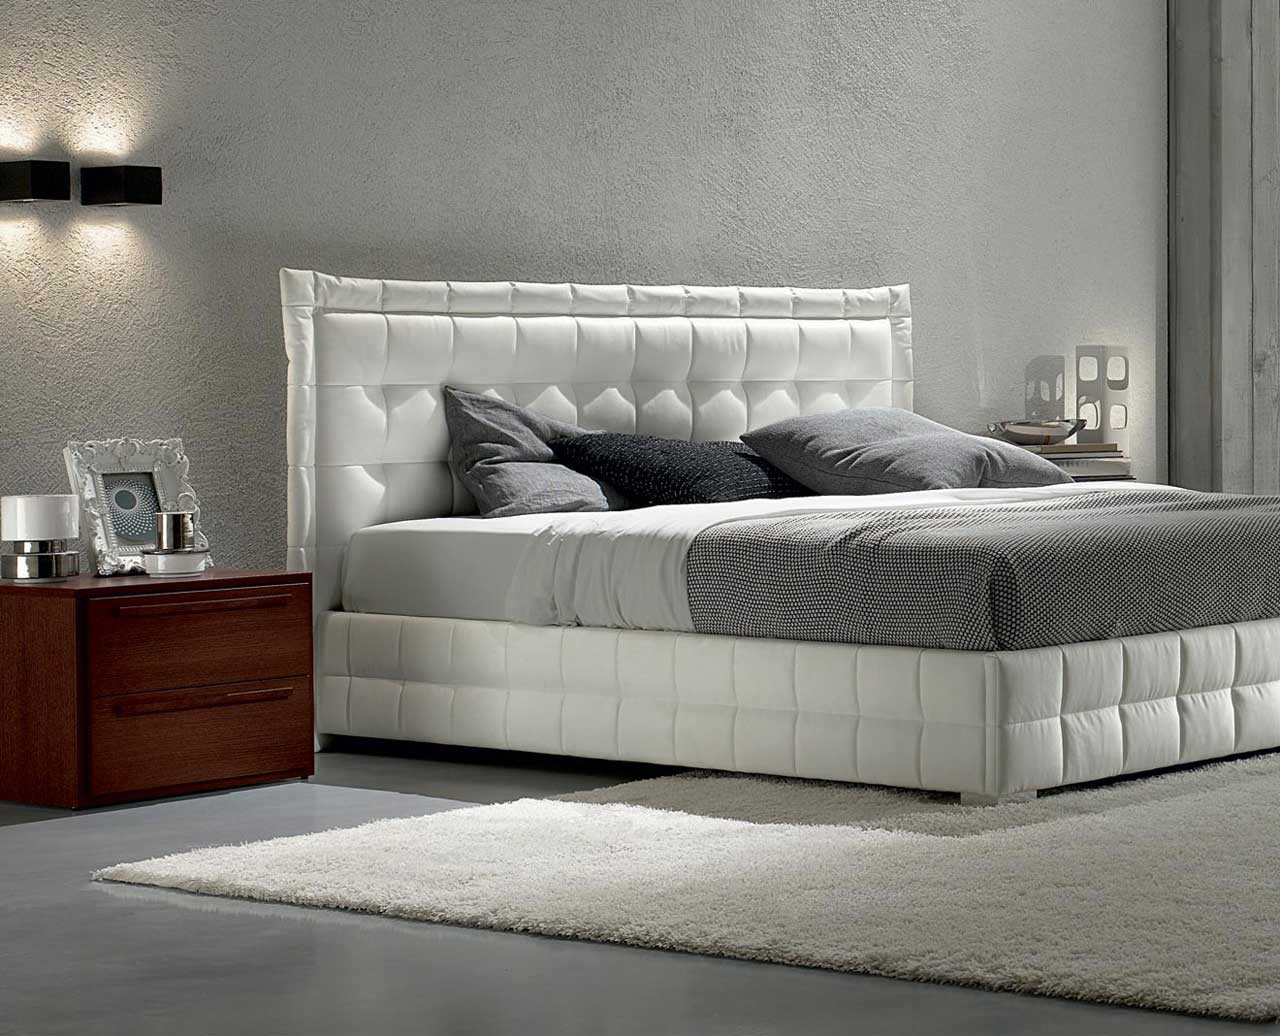 White Modern Bedroom Set
 White Bedroom Furniture for Modern Design Ideas Amaza Design